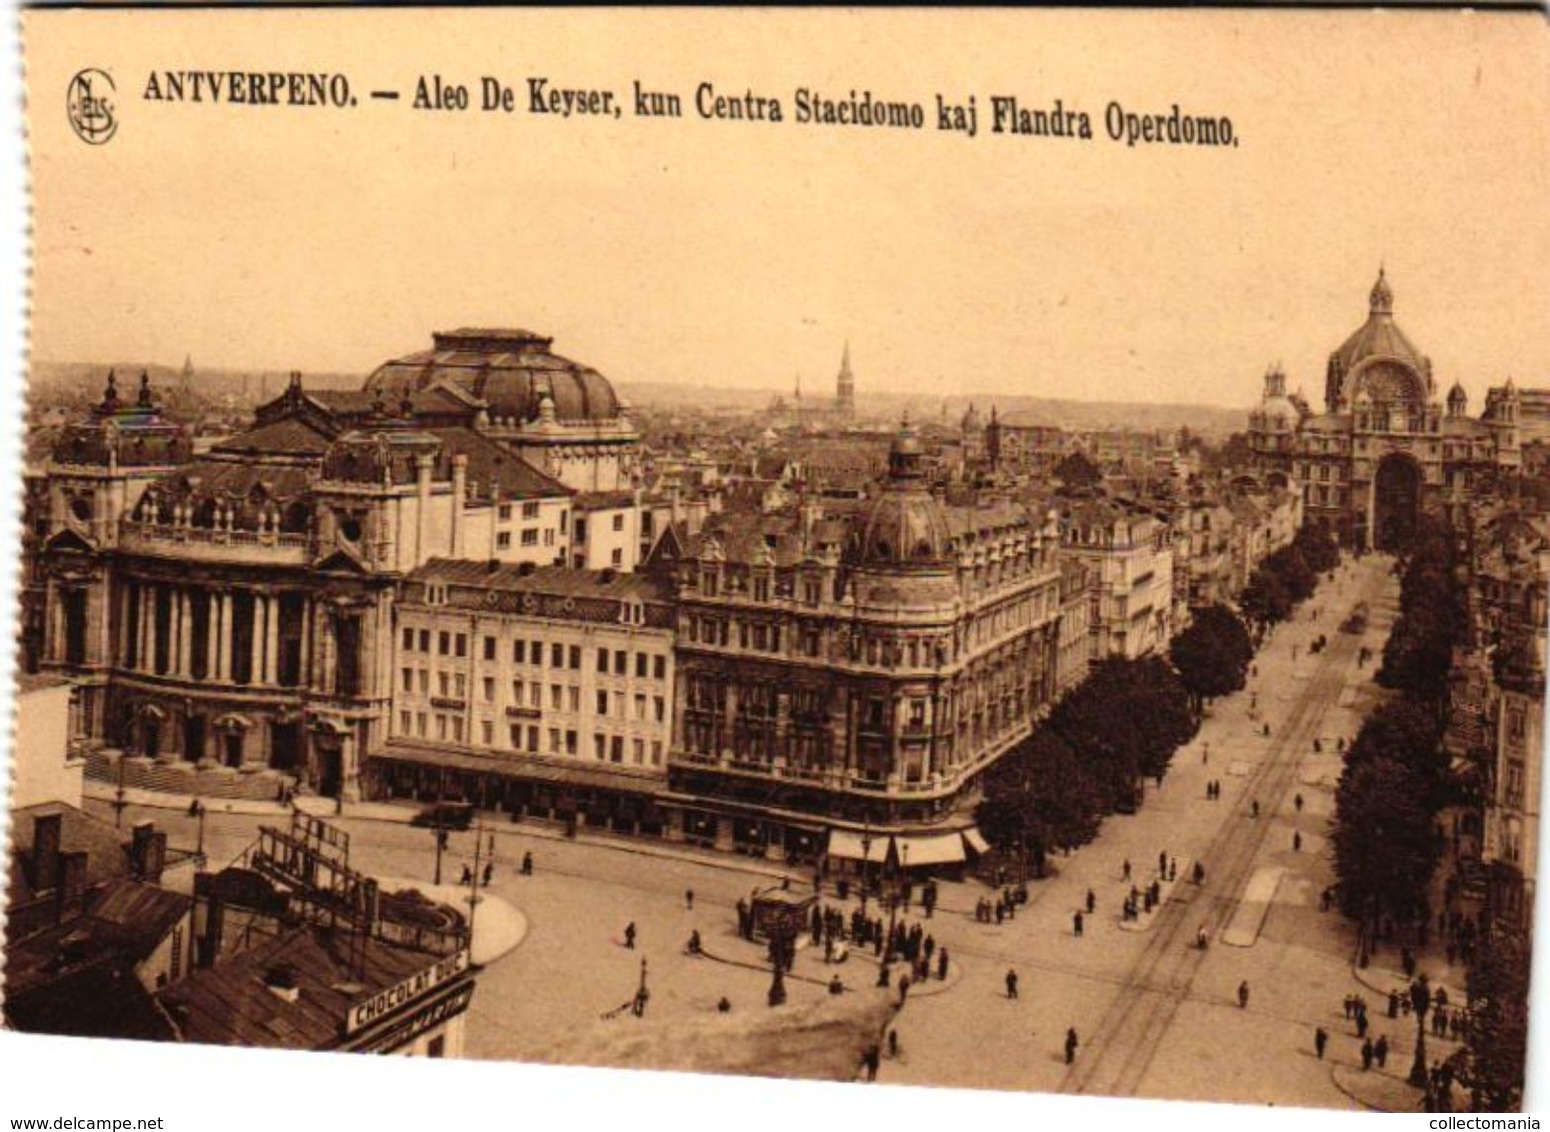 9 oude postkaarten  Esperanto kunsttaal , nieuwjaarswensen, nova Jaro  Zamenhof 1859-1917, Antwerpen sluitzegels